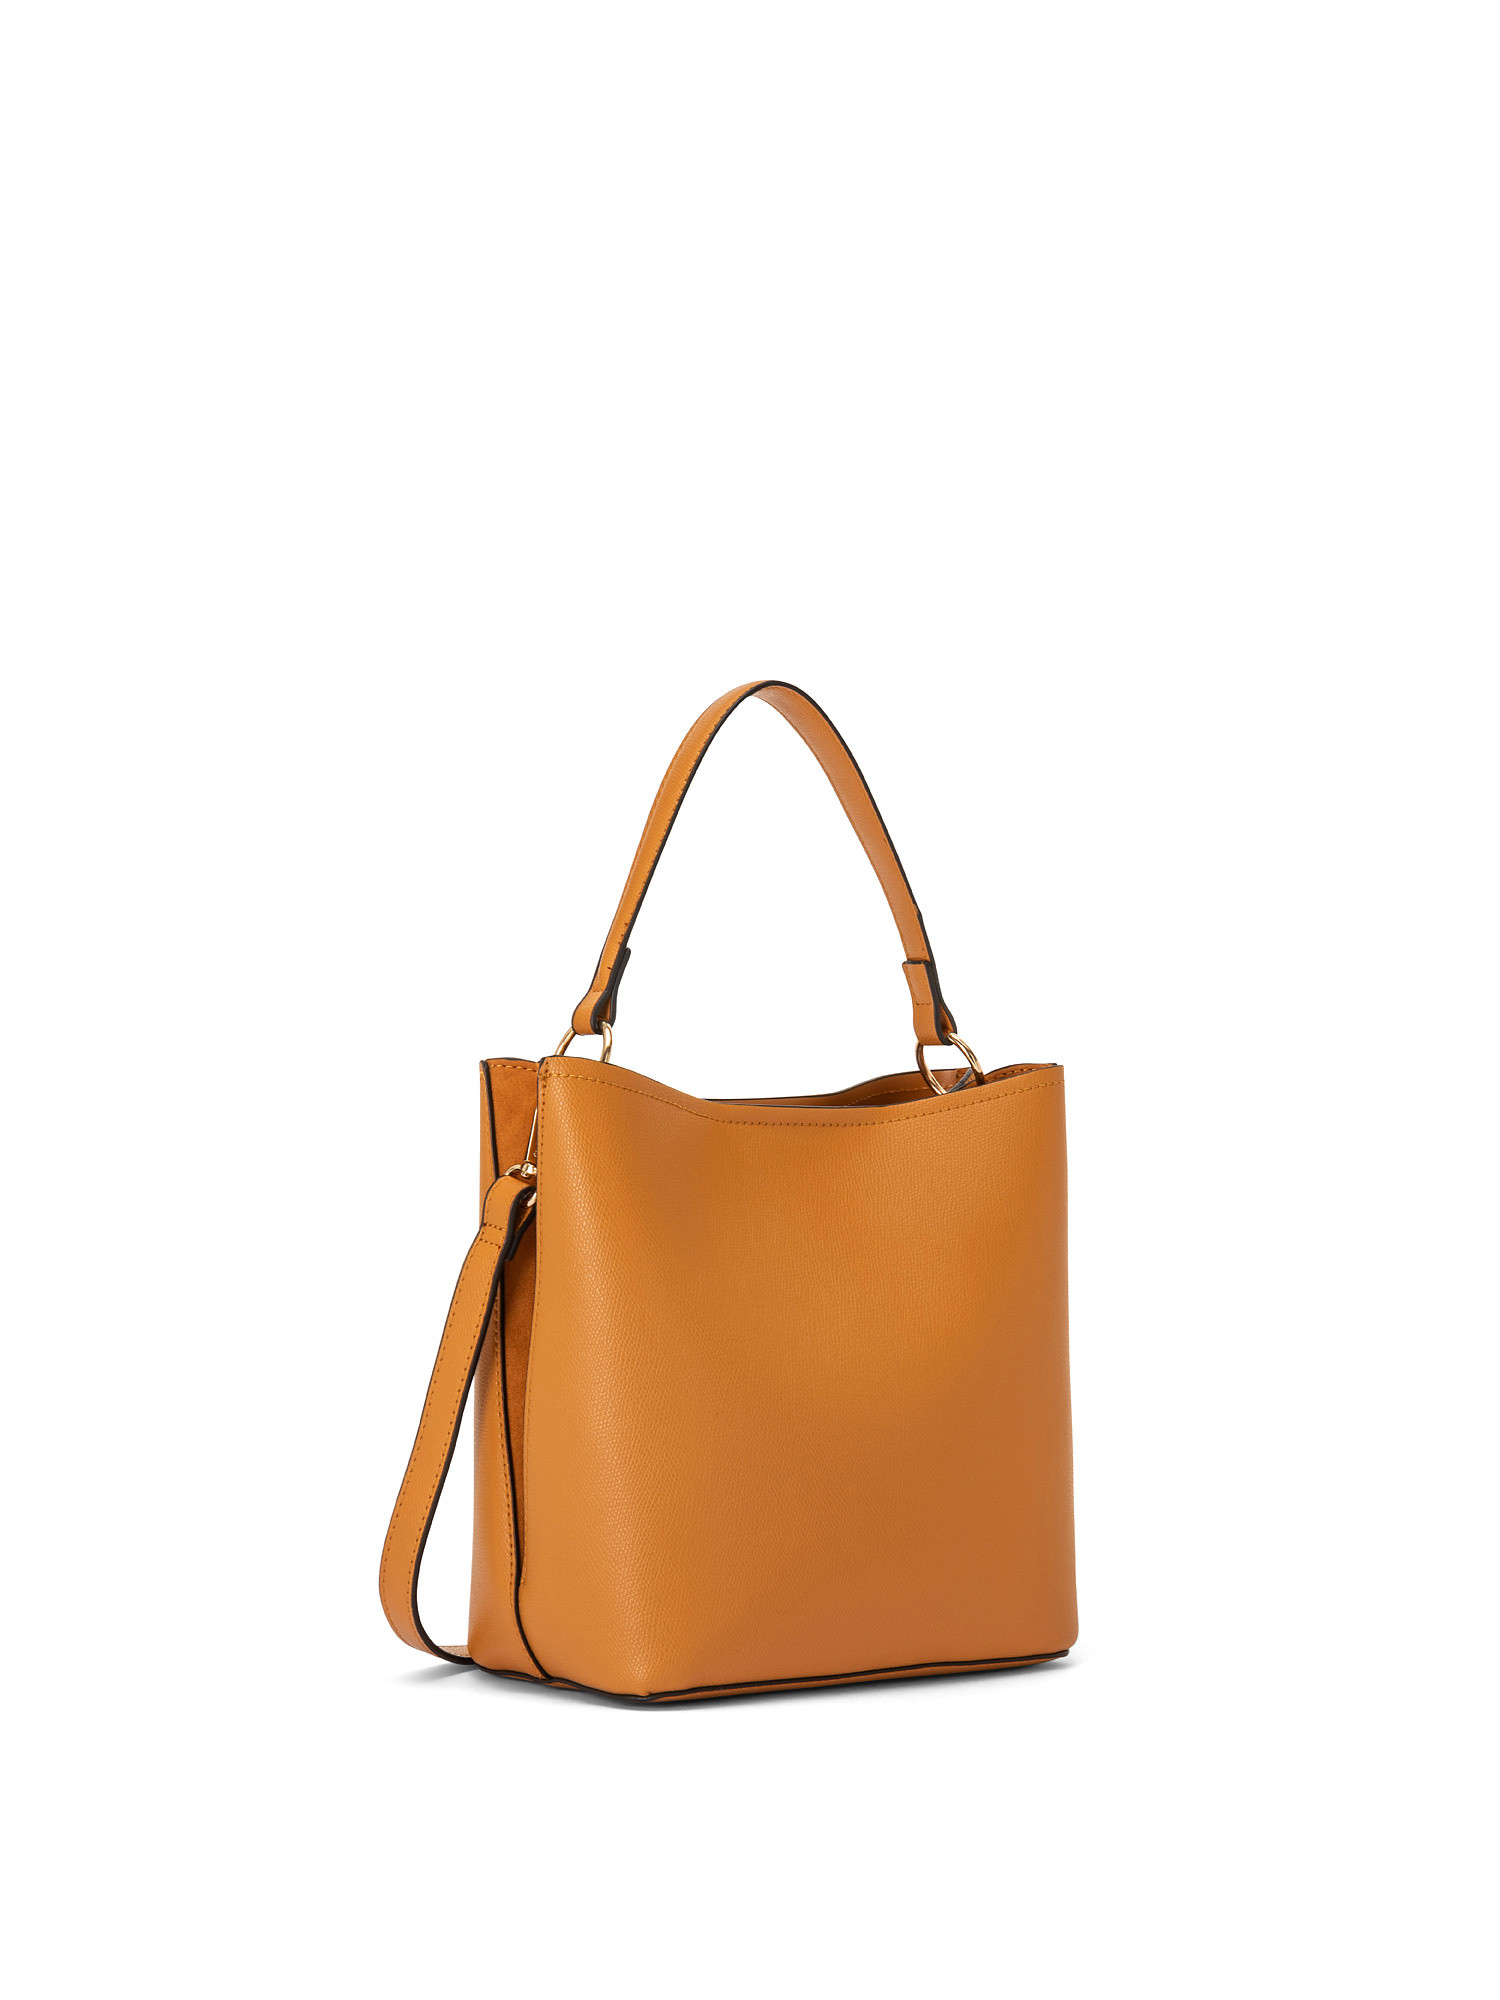 Leatherette hobo bag, Orange, large image number 1